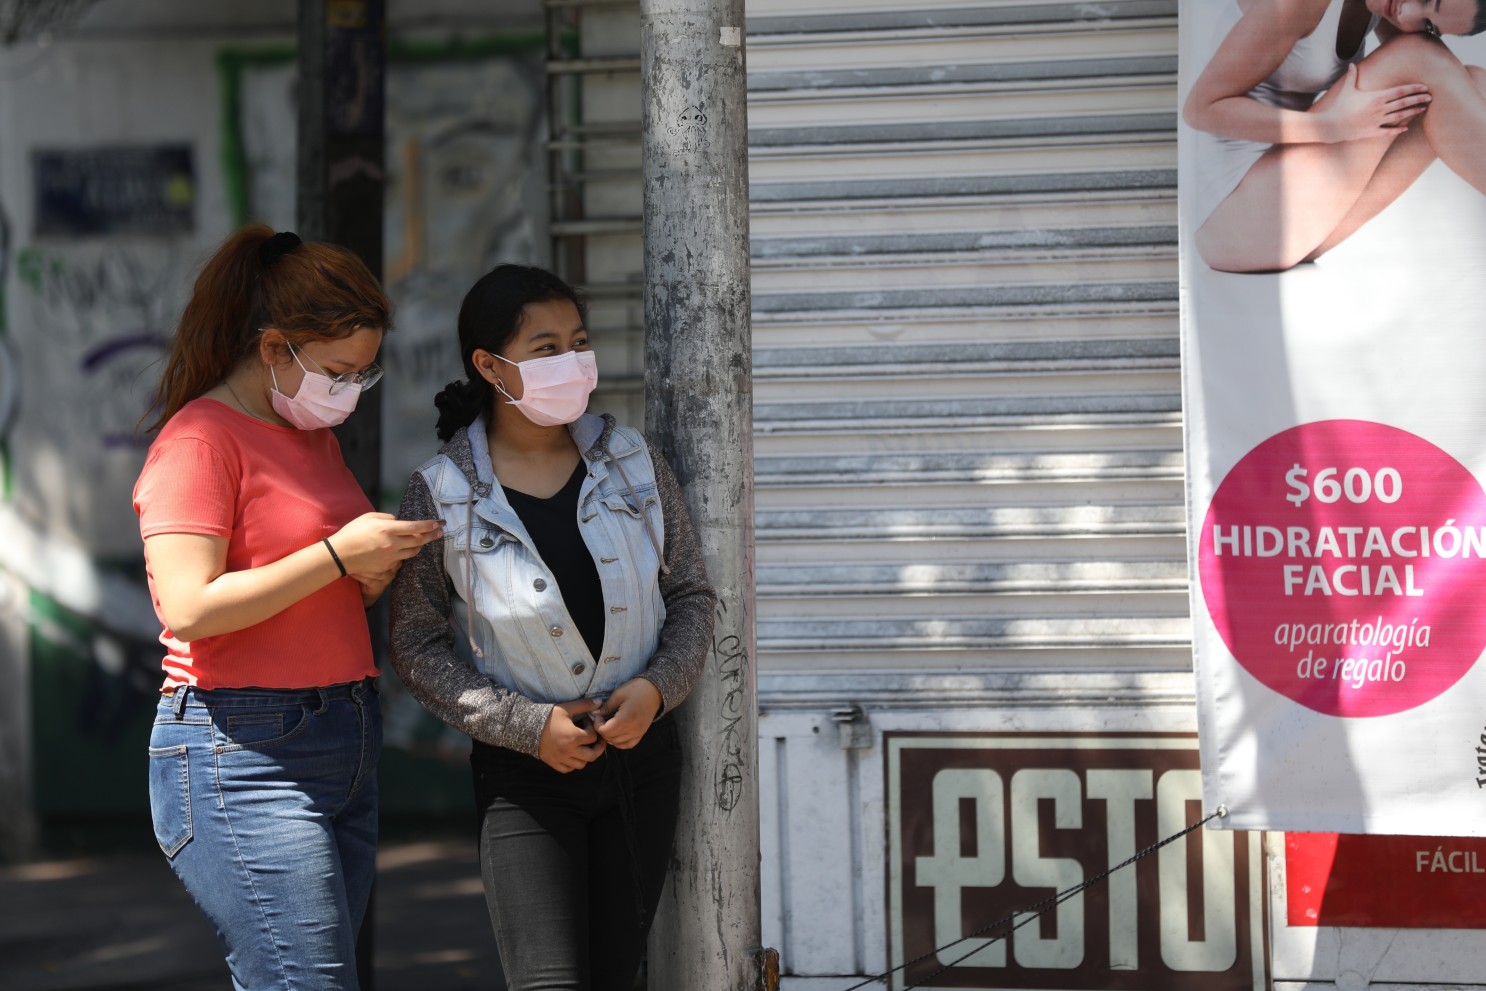 Tuxtla sin feminicidios en lo que va del año: Jorge Alexis Zuart